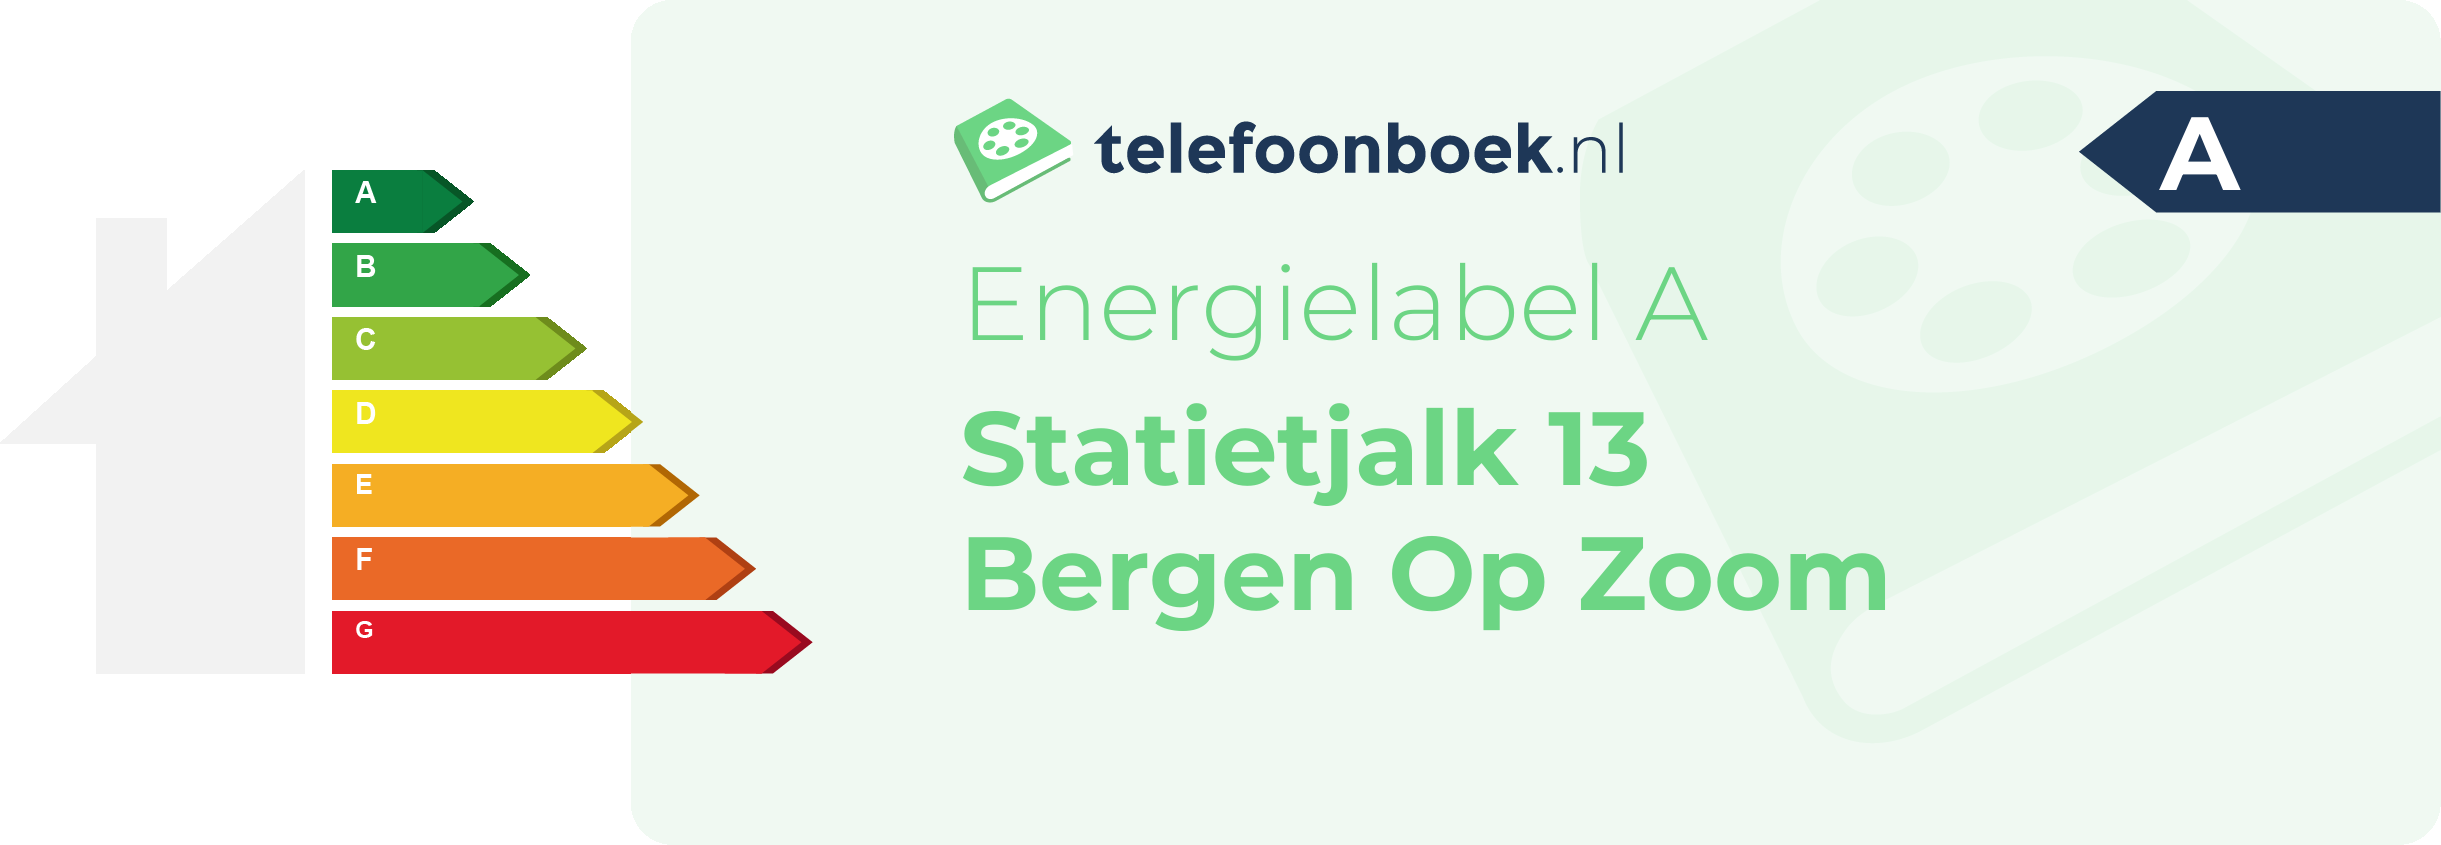 Energielabel Statietjalk 13 Bergen Op Zoom